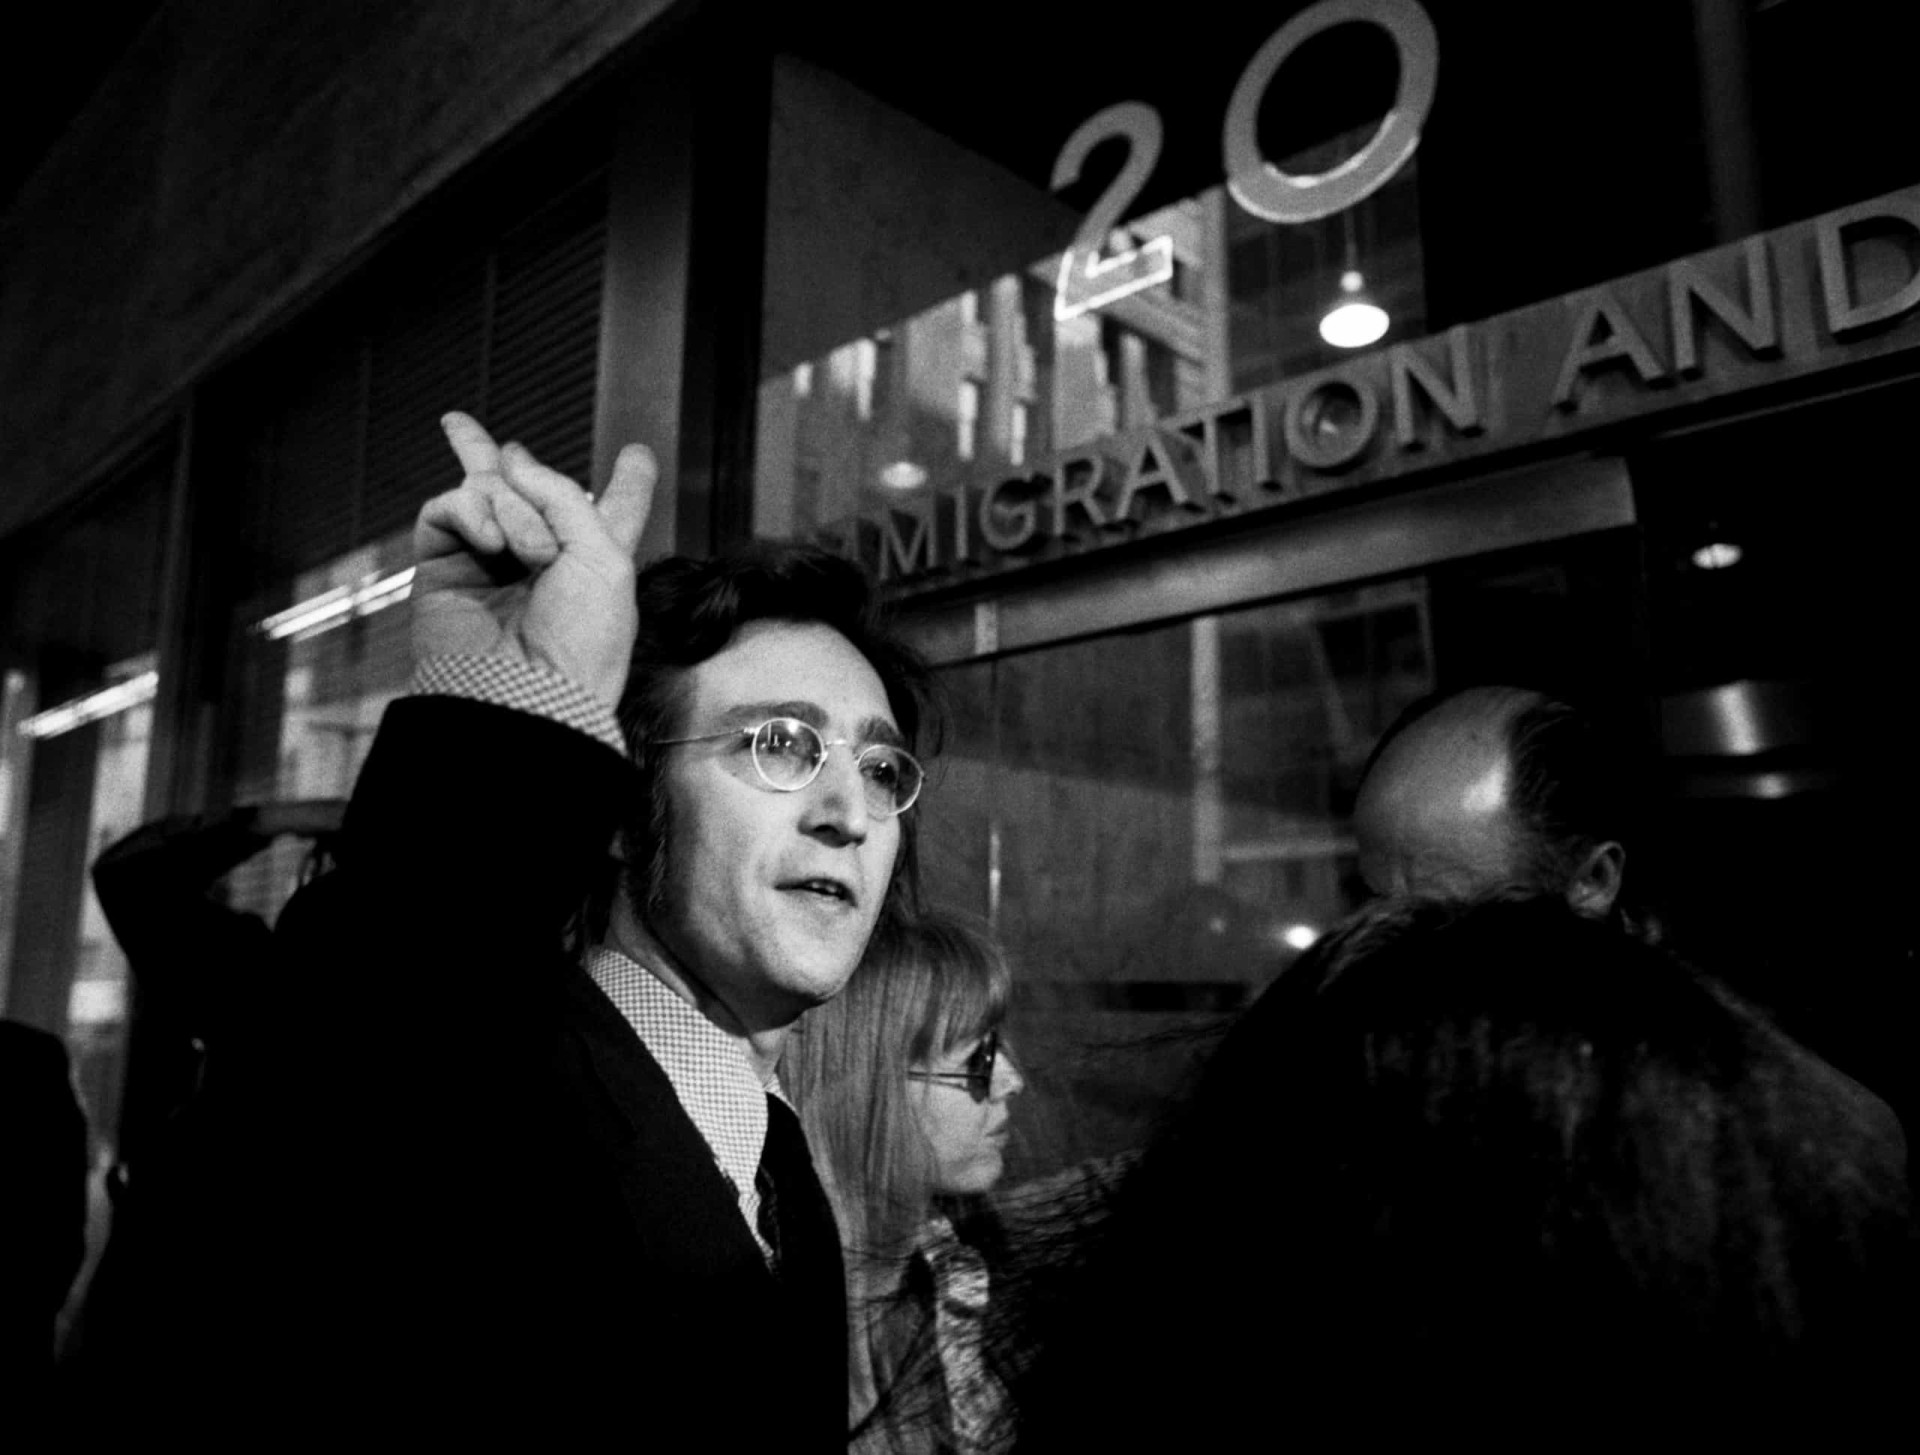 <p>John Lennon et Yoko Ono s'étaient installés dans la ville de New York en août 1971. Mais son activisme politique avait attiré l'attention du gouvernement de Richard Nixon, le président américain de l'époque. L'artiste était considéré comme une menace pour la sécurité nationale, et le gouvernement américain avait tenté de l'expulser vers l'Angleterre. Le chanteur est photographié ici au bureau new-yorkais de l'immigration et de la naturalisation en mai 1972, pour lutter contre les procédures d'expulsion.</p><p><a href="https://www.msn.com/fr-ca/community/channel/vid-7xx8mnucu55yw63we9va2gwr7uihbxwc68fxqp25x6tg4ftibpra?cvid=94631541bc0f4f89bfd59158d696ad7e">Suivez-nous et accédez tous les jours à du contenu exclusif</a></p>